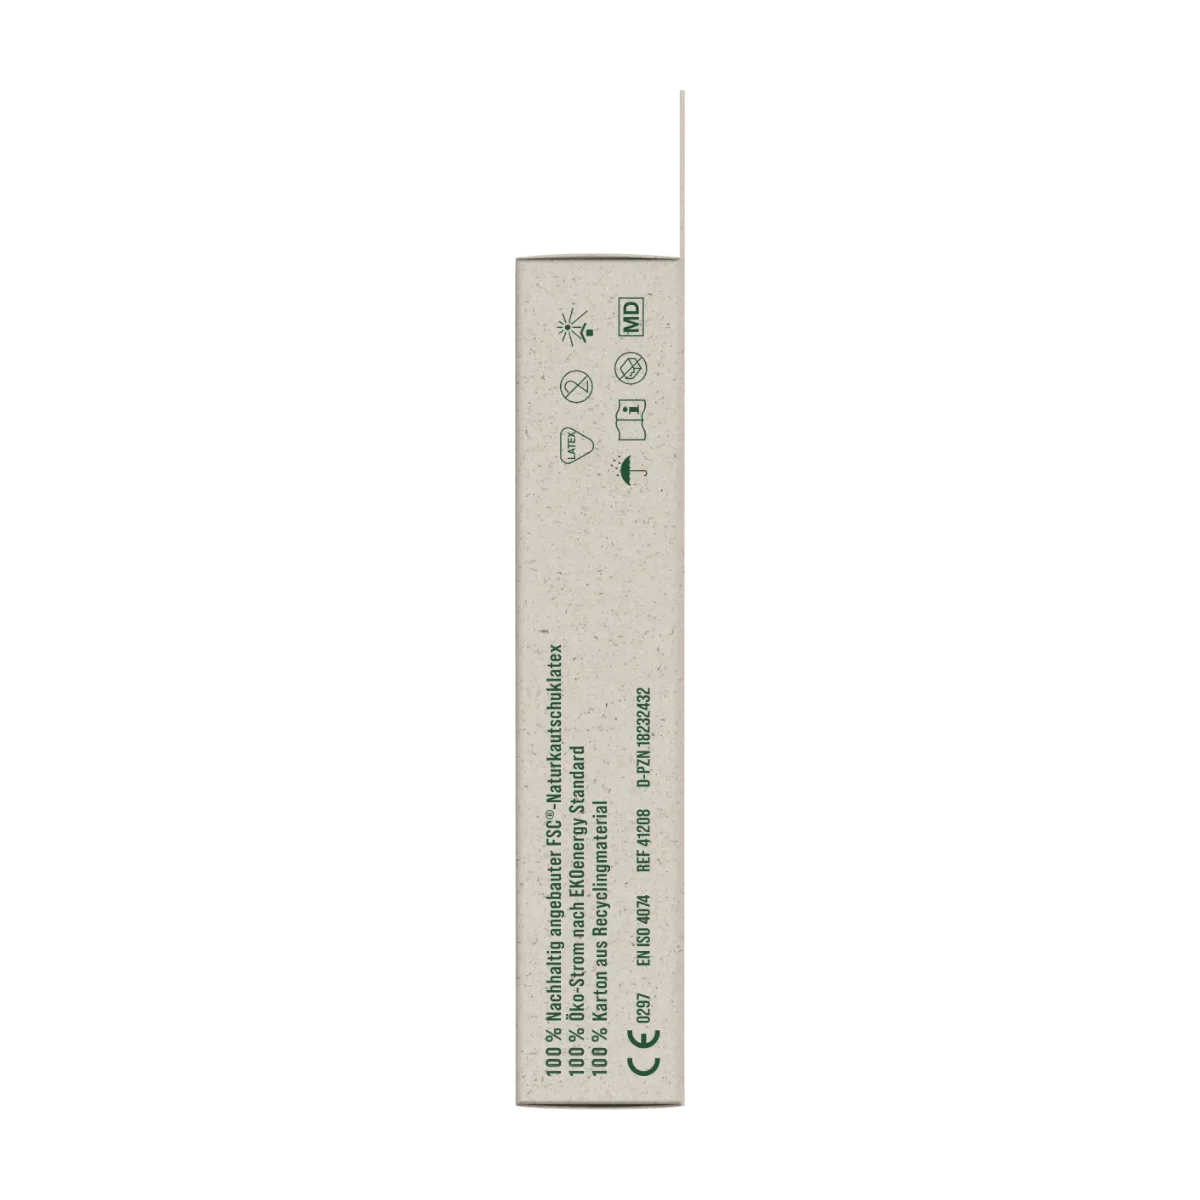 Ritex Kondome Pro Nature Sensitiv, Breite 53mm, 8 Stk